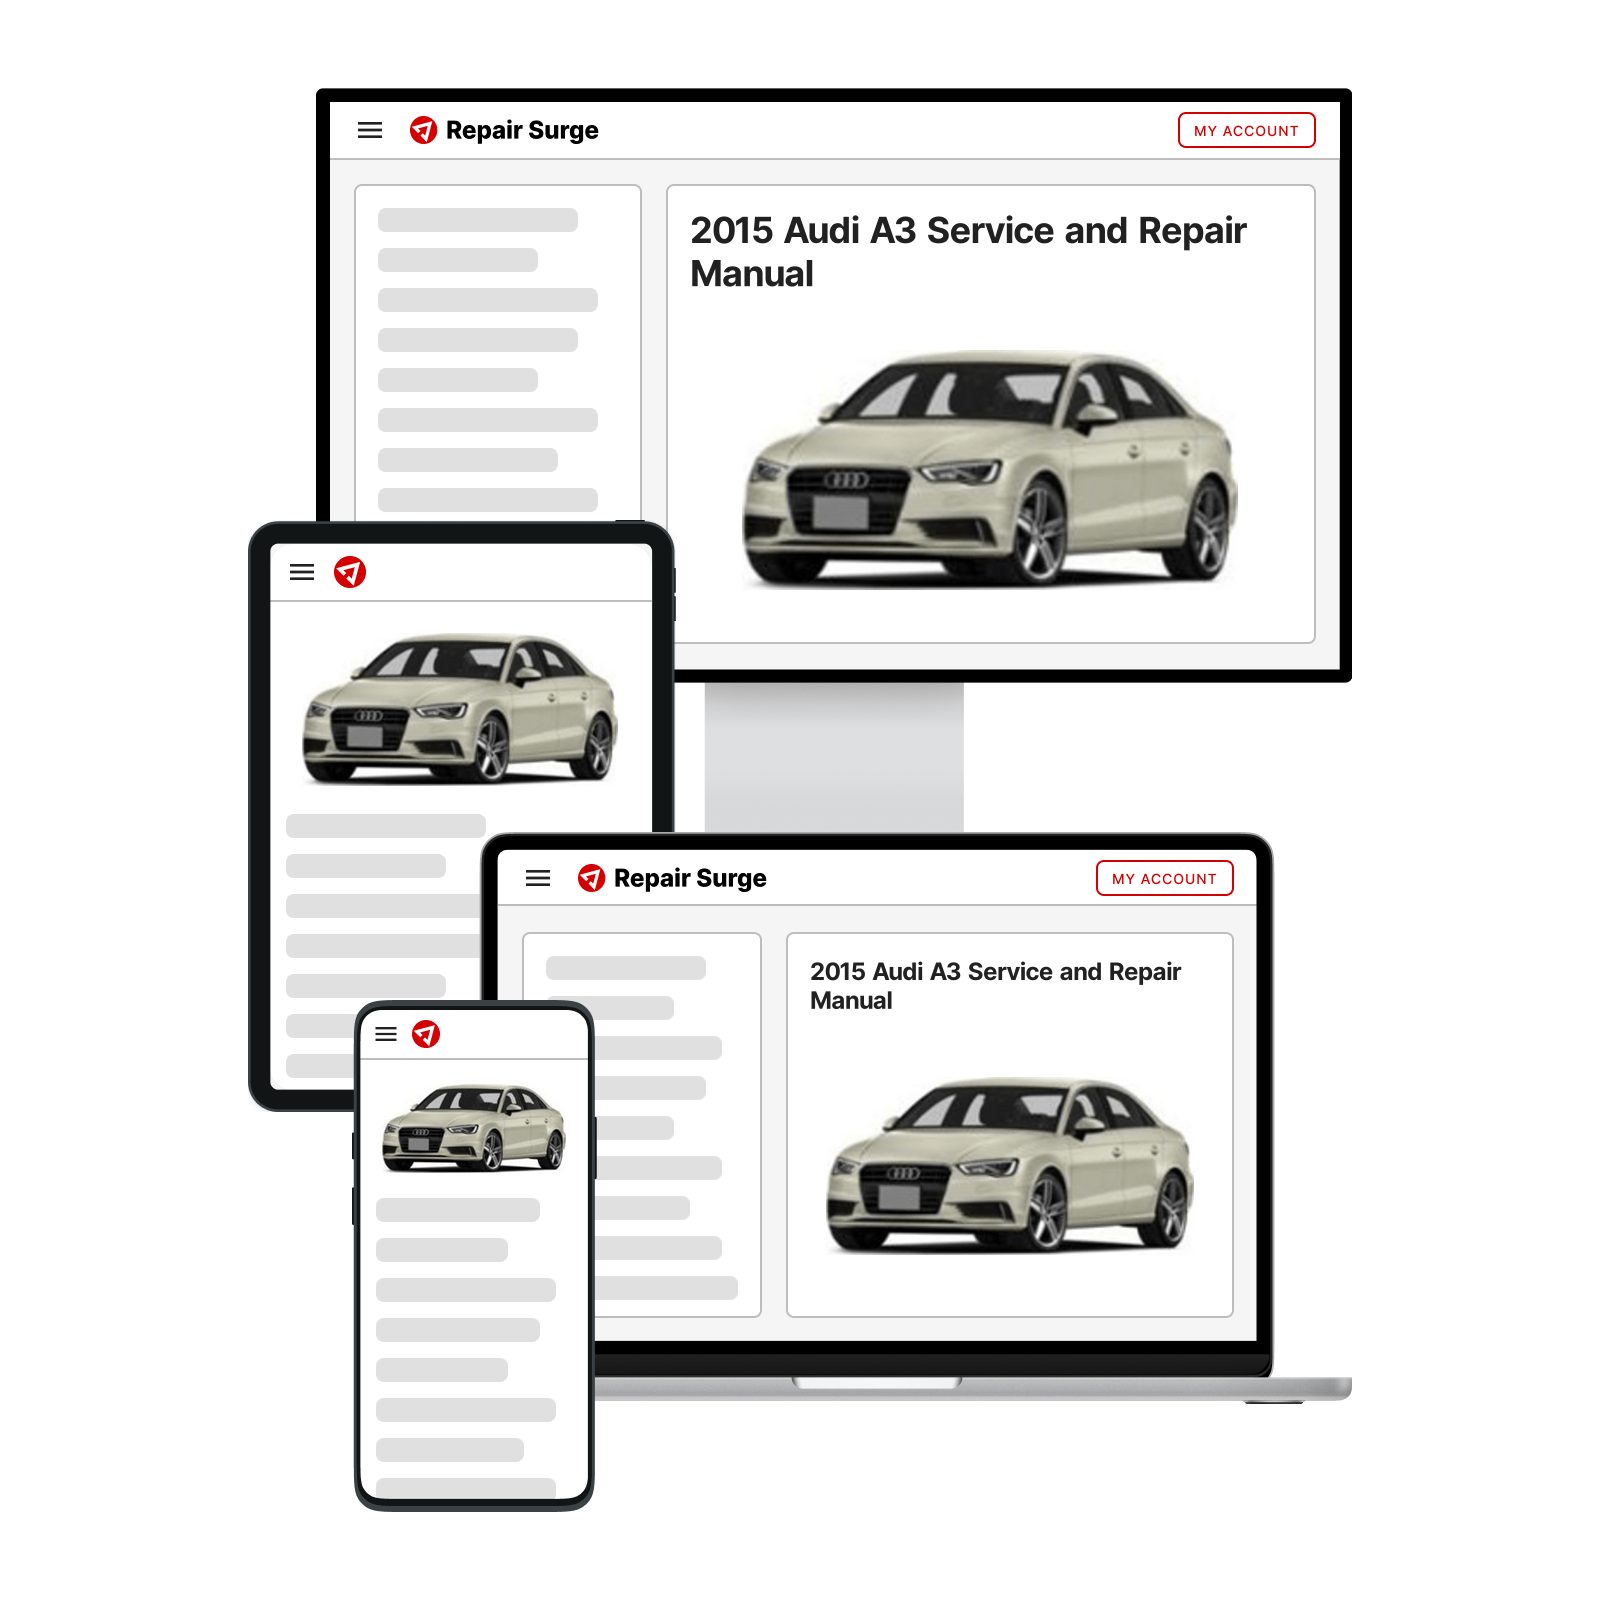 2015 Audi A3 service and repair manual hero image